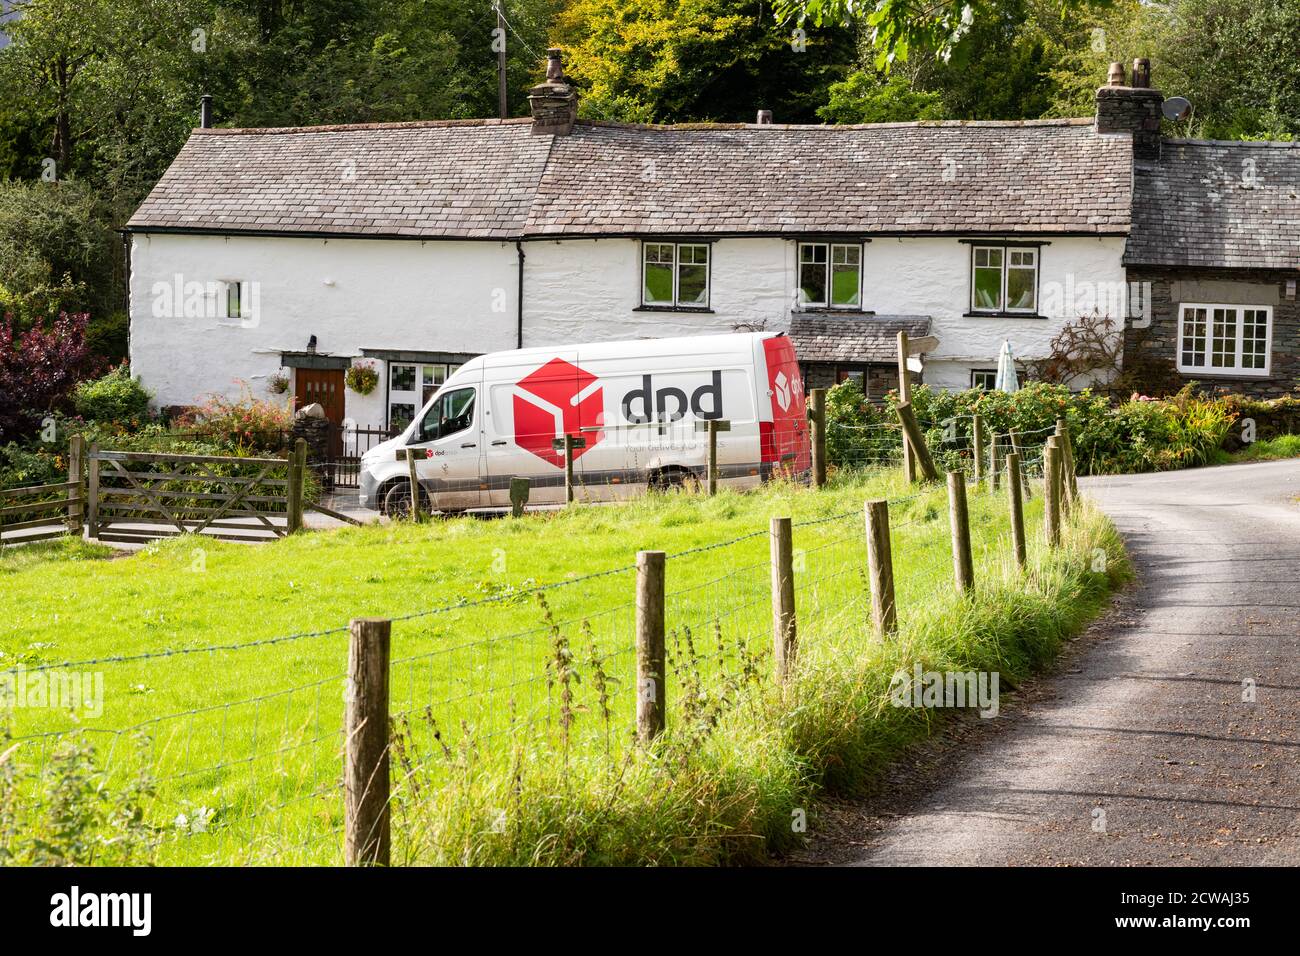 DPD Delivery van en milieu rural, Lake District, Angleterre, Royaume-Uni Banque D'Images